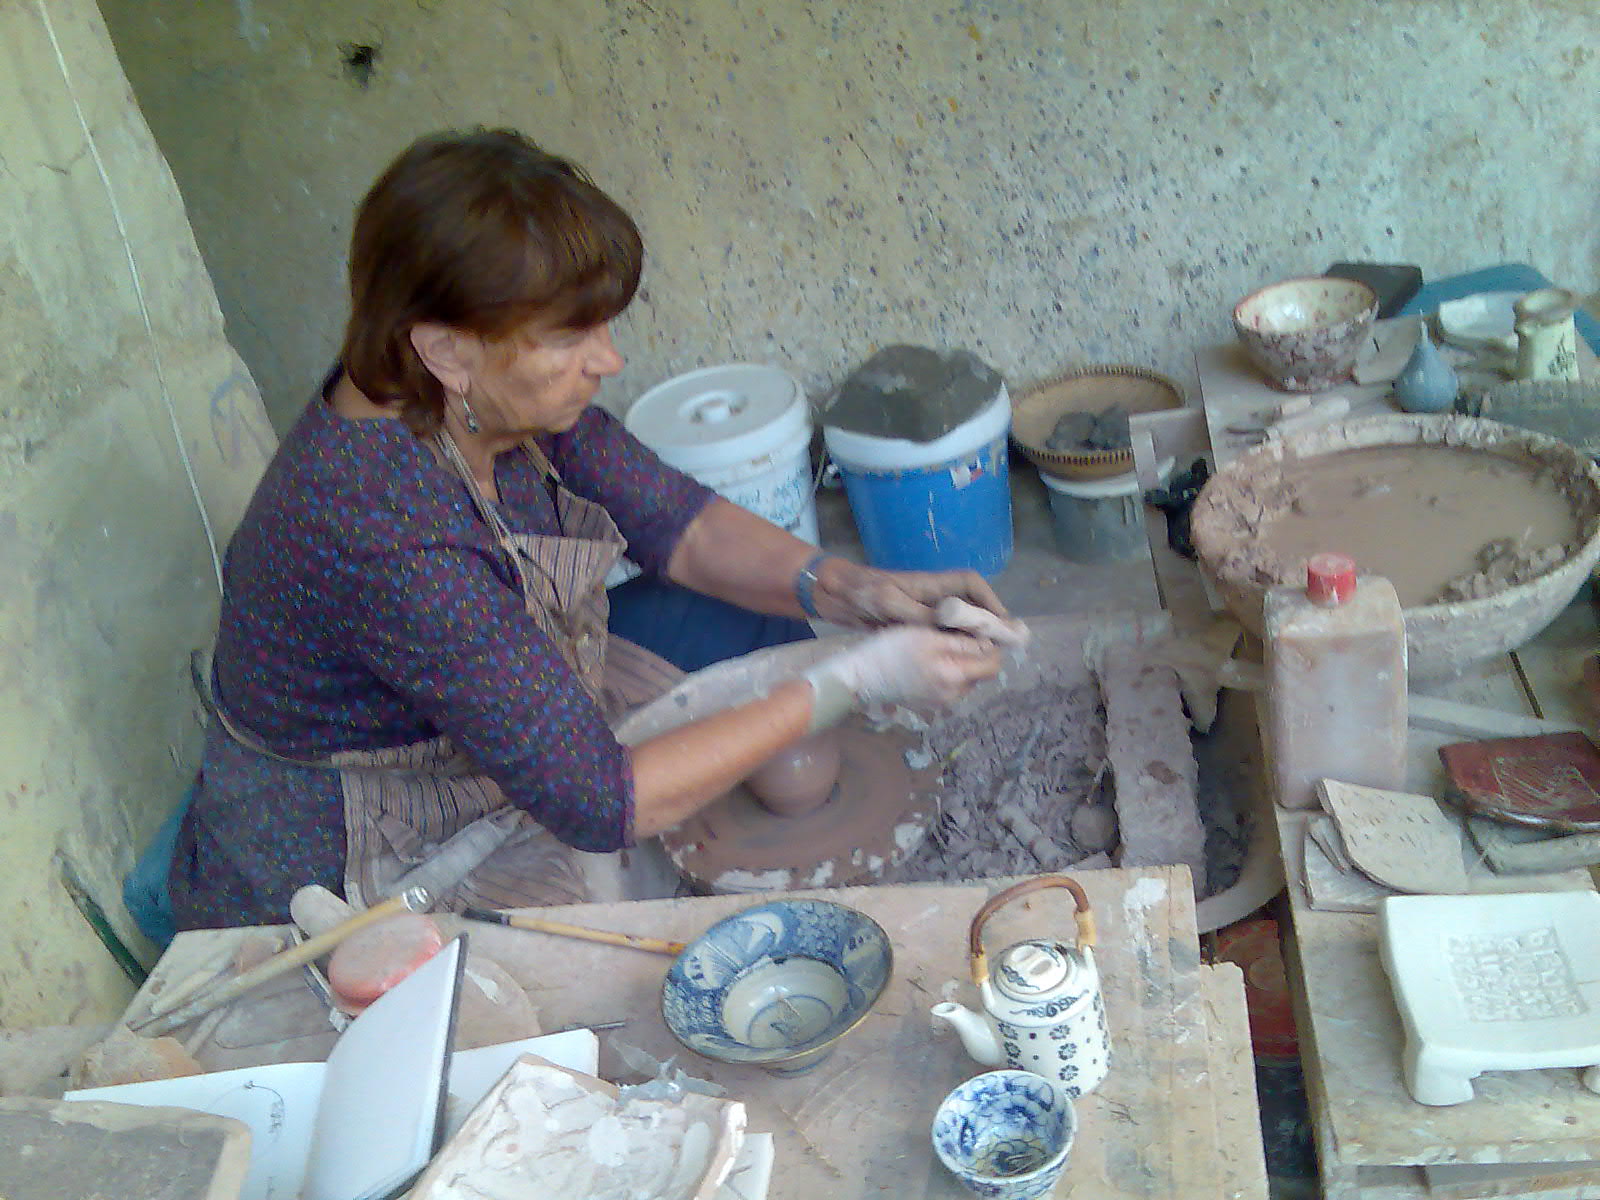 السيدة إيفيلين السويسريه أثناء عملية صناعة الخزف